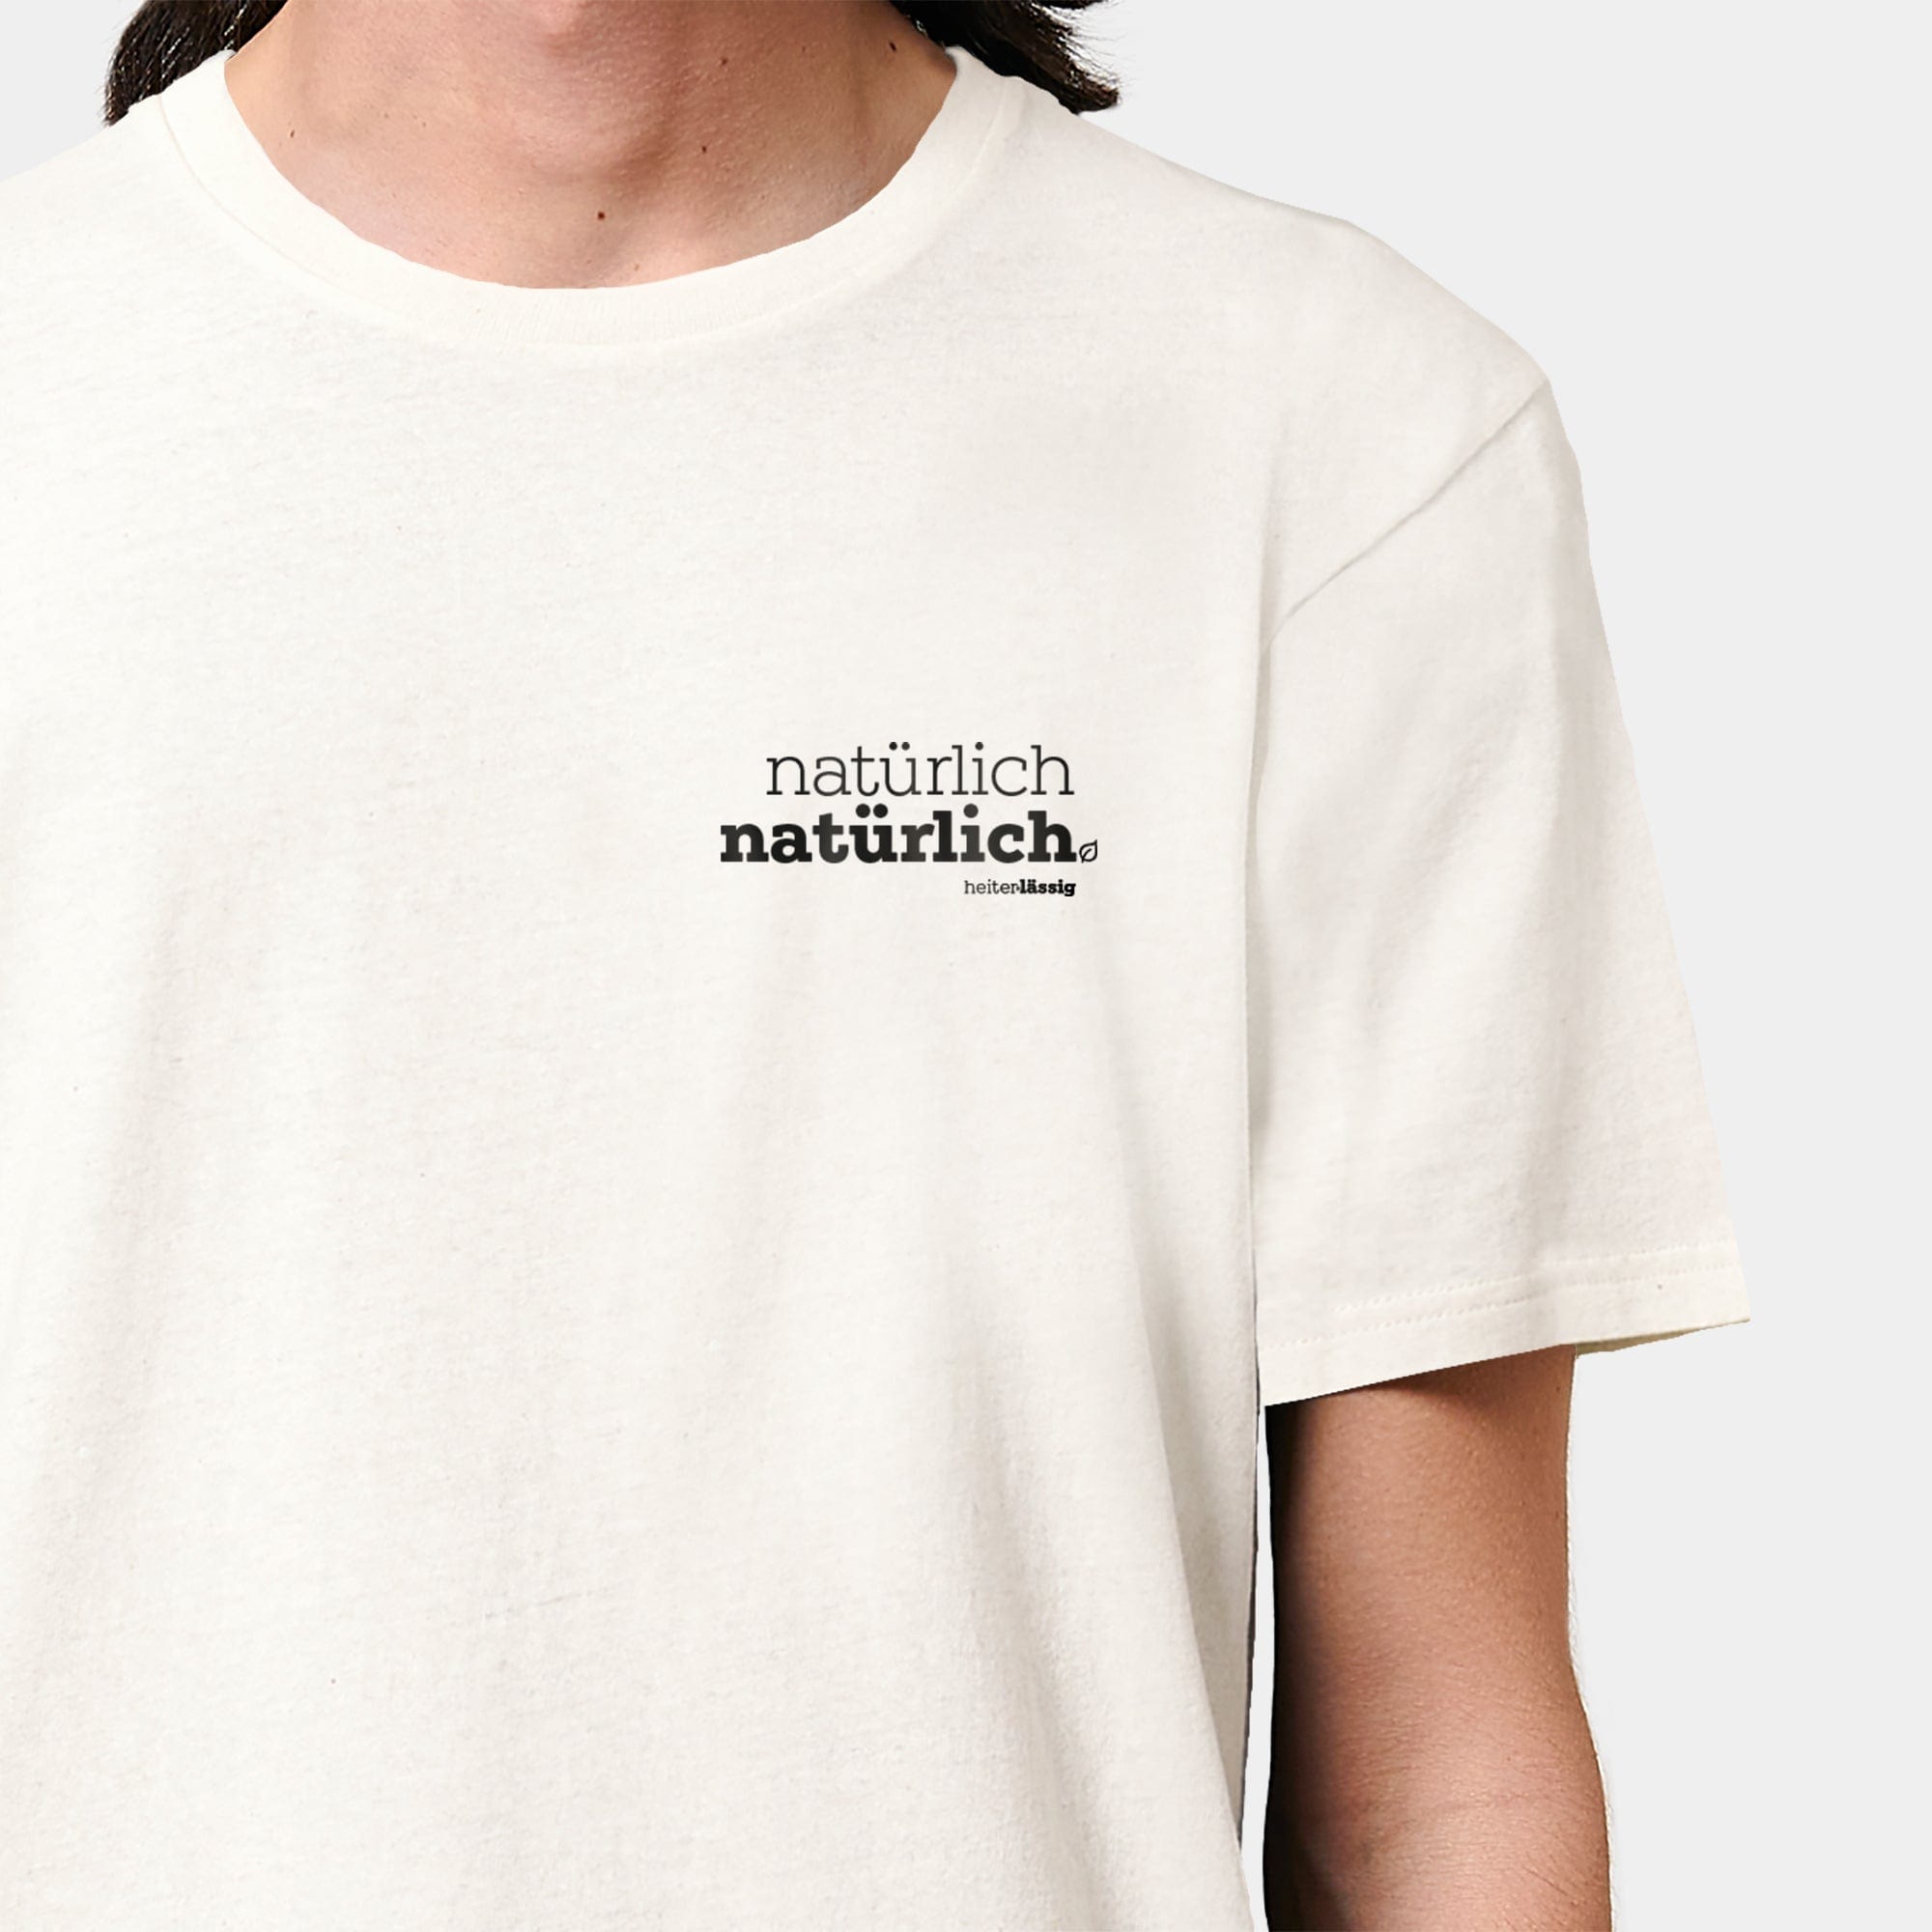 HEITER & LÄSSIG T-Shirt ORIGINAL "natürlich, natürlich" S / RE-weiß - aus nachhaltiger und fairer Produktion